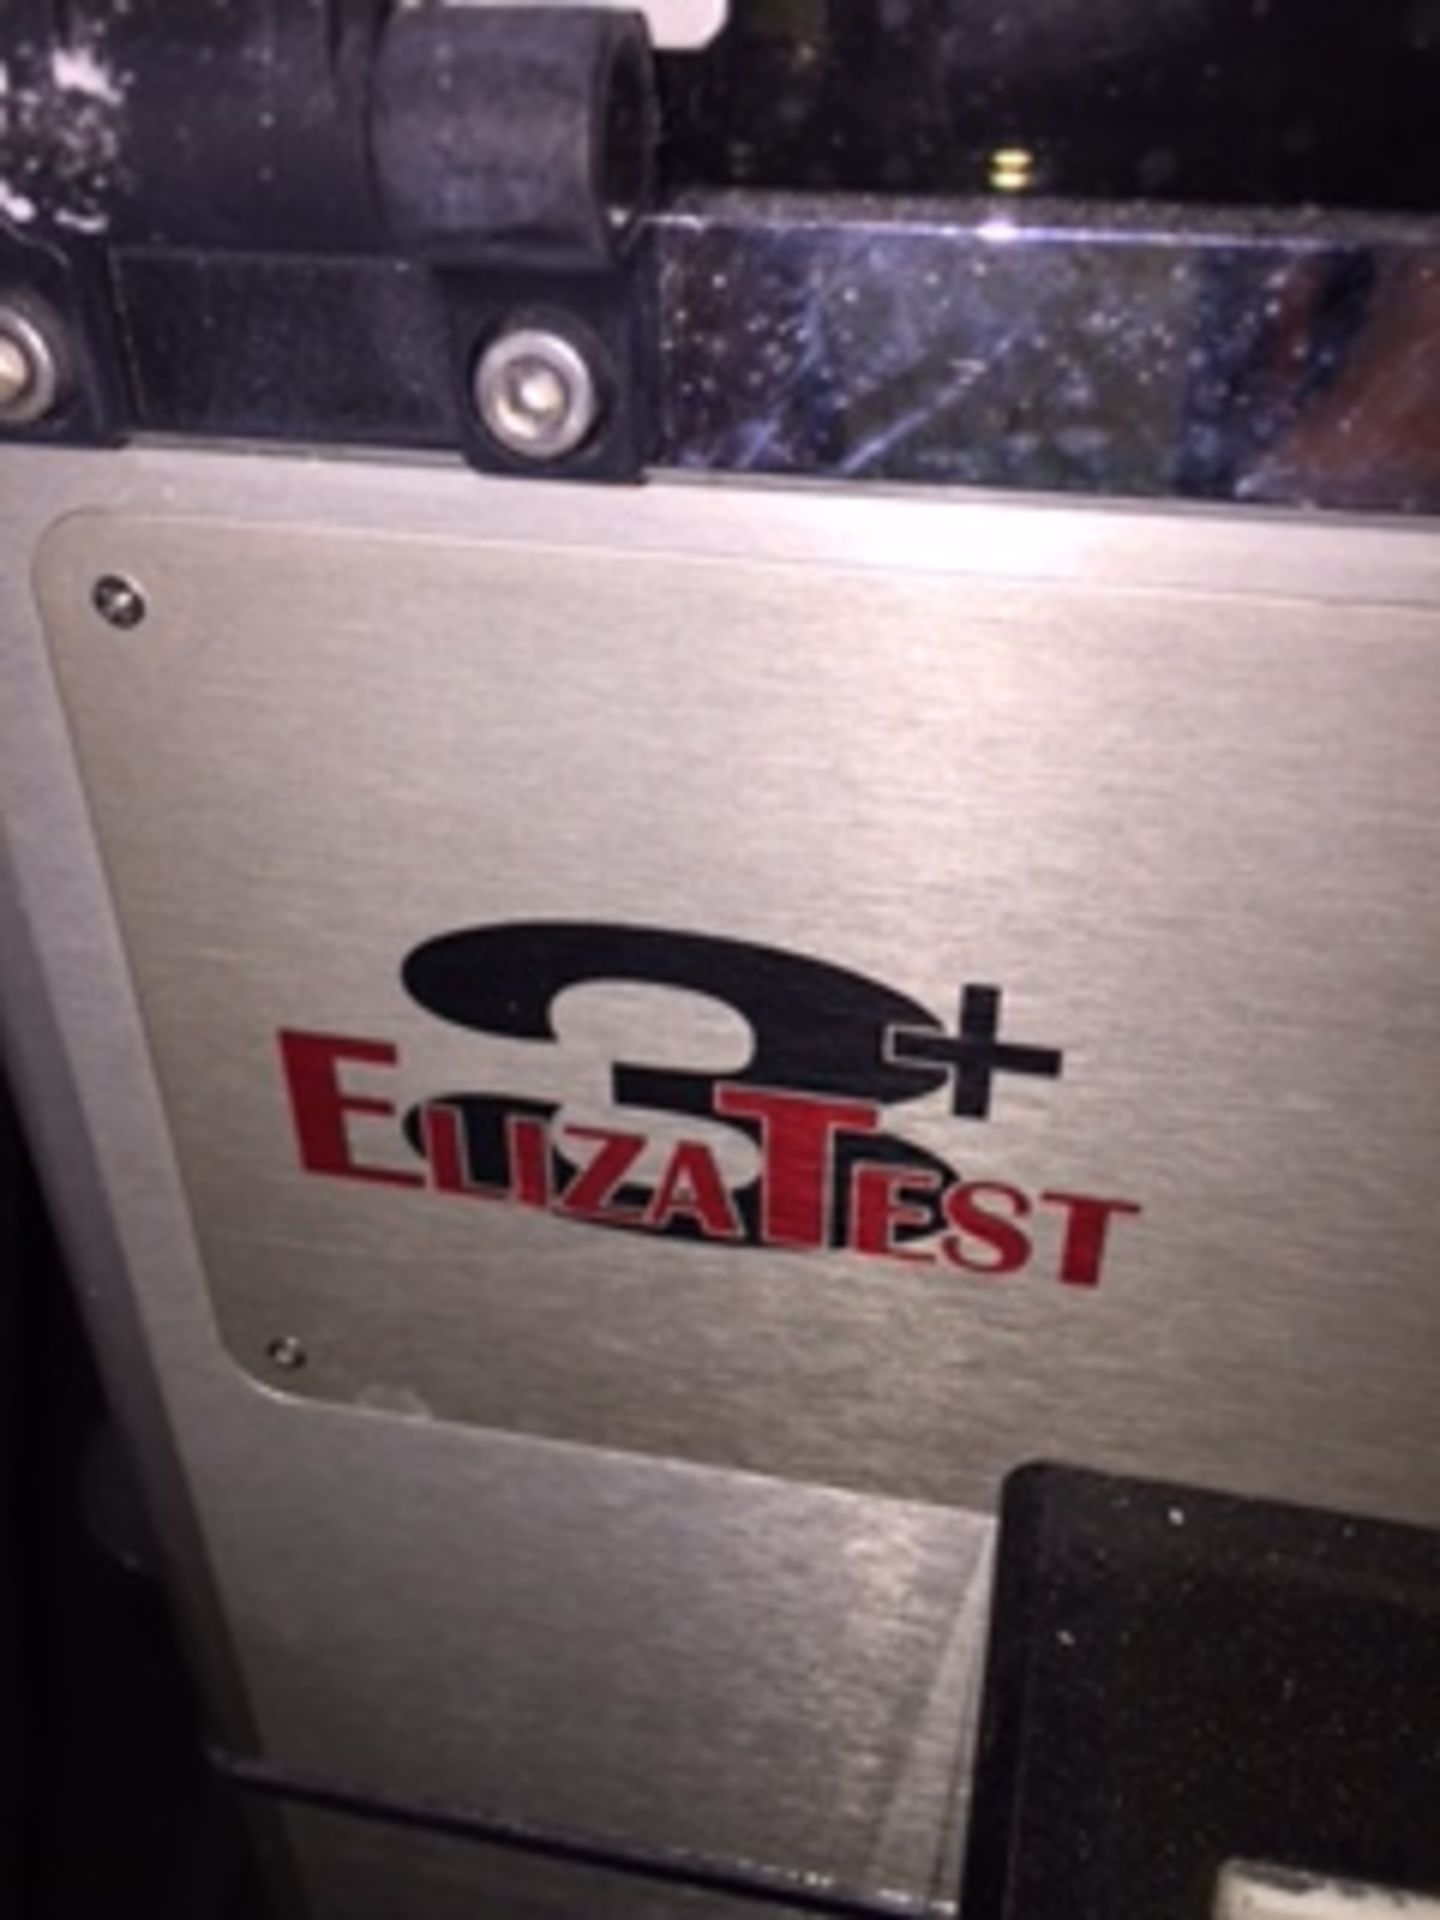 Tablet Sampler, Elizabeth Hata, Model #ElIZATEST3T, SN ET3089702002 - Image 5 of 5